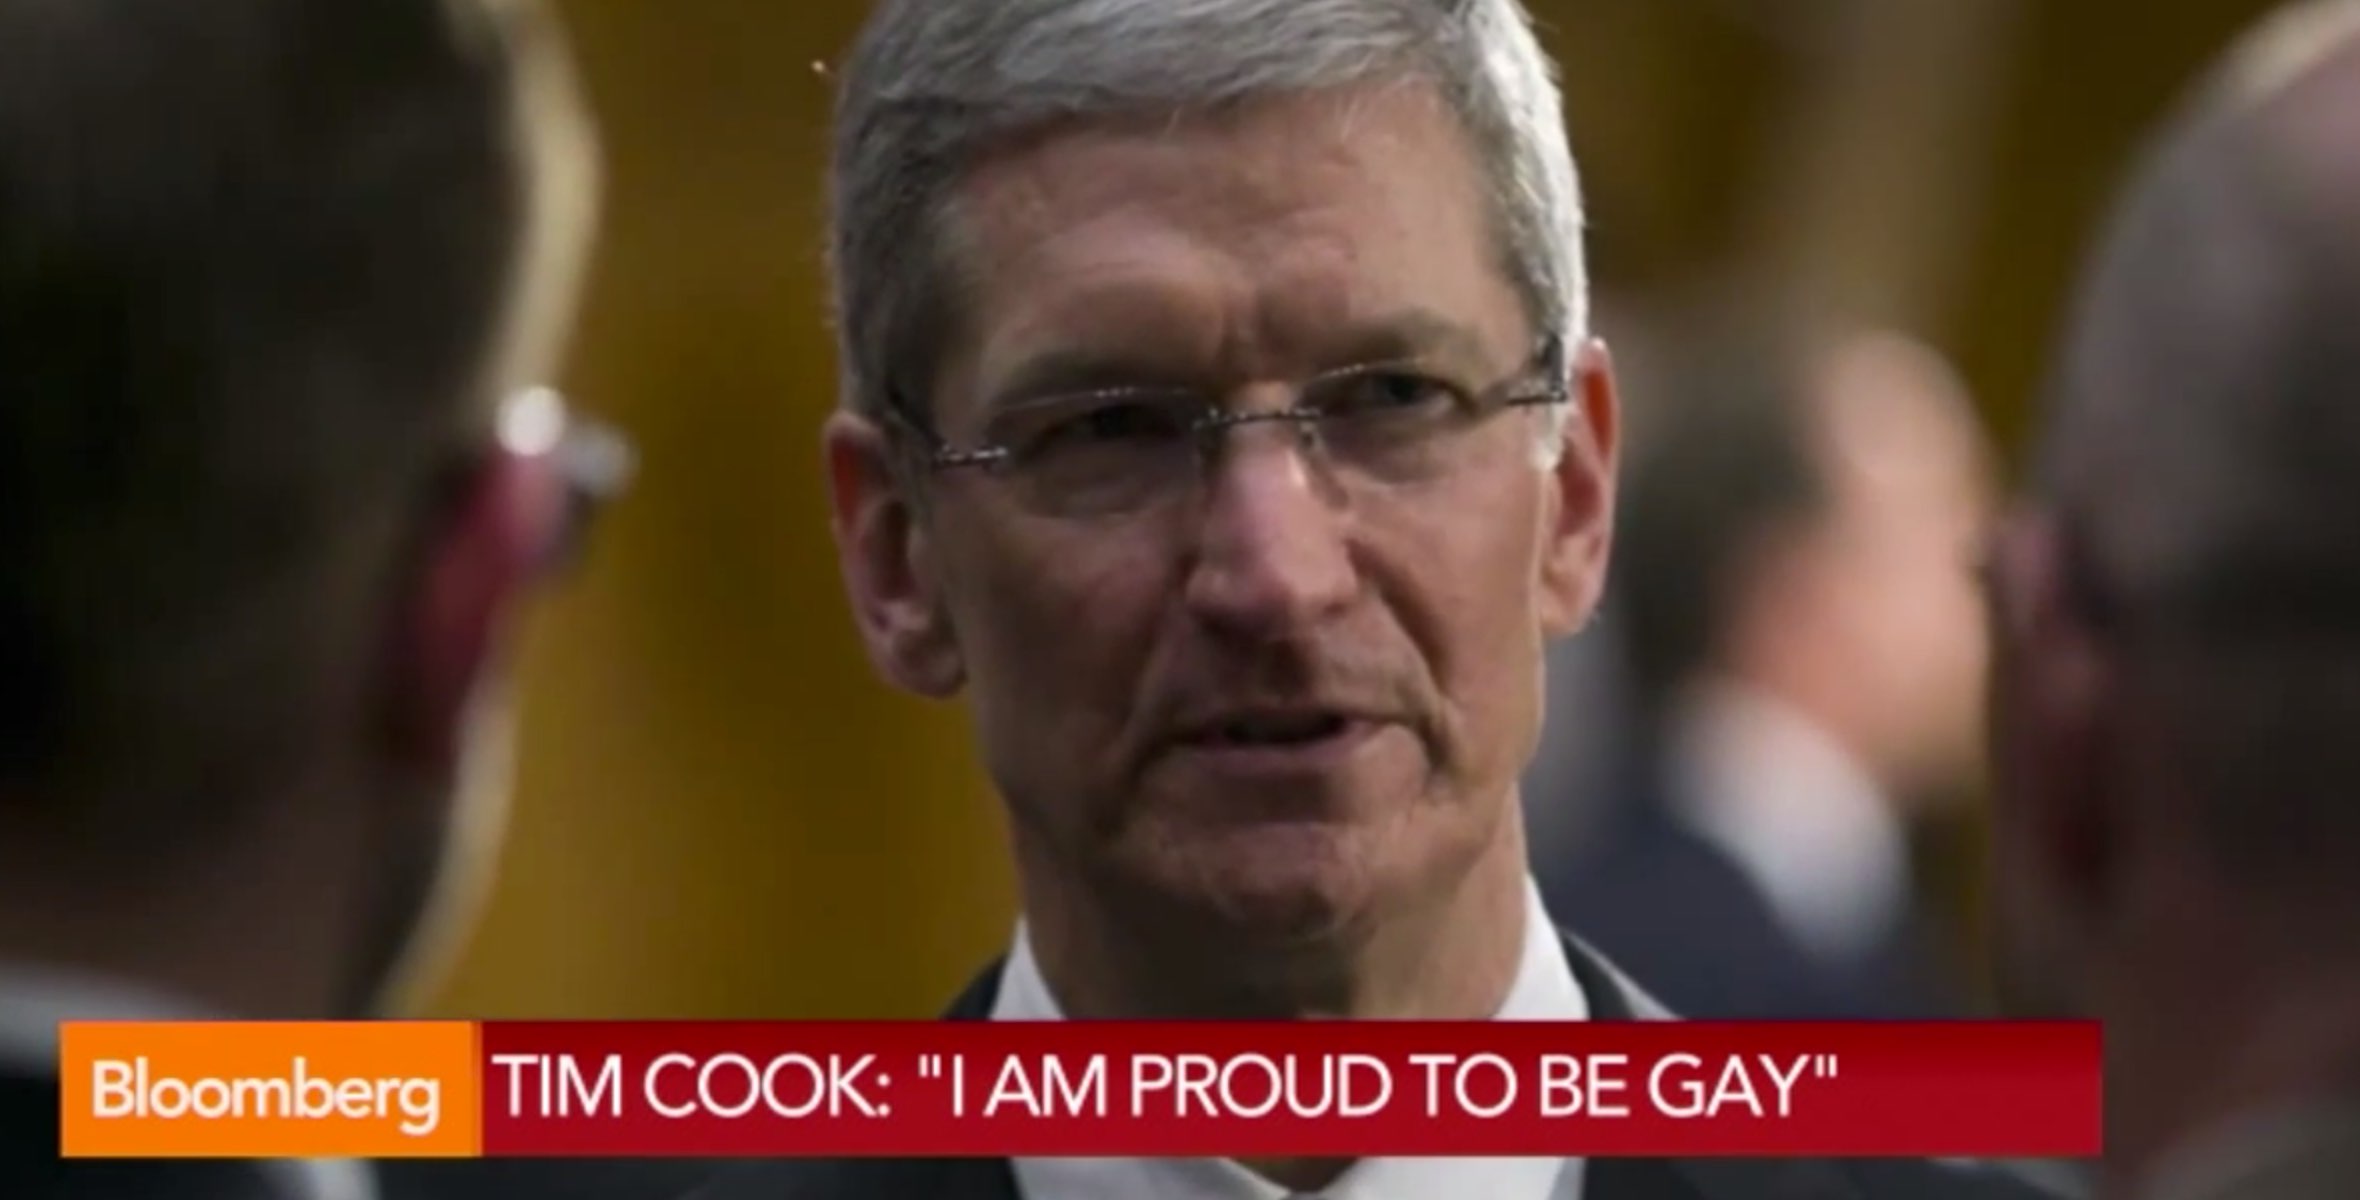 Offiziell: Apple CEO Tim Cook ist schwul - und stolz darauf! 2